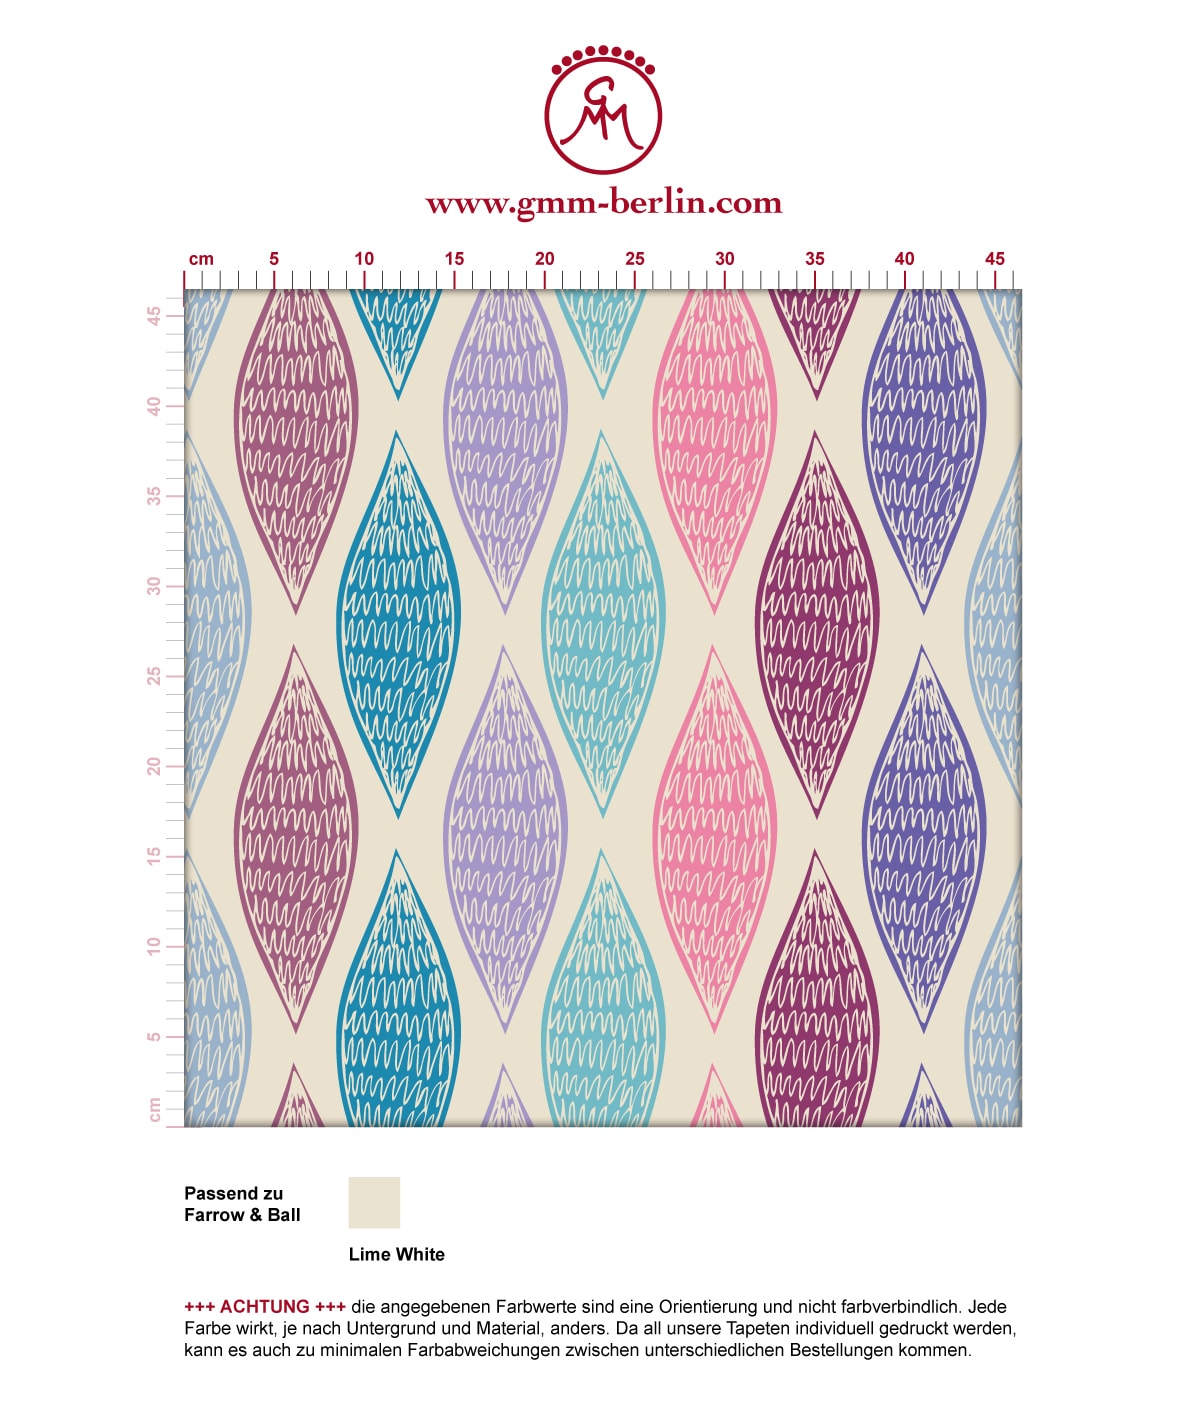 Lila moderne Designer Tapete "Regenbogen Waben" mit bunten Farben angepasst an Farrow and Ball Wandfarben. Aus dem GMM-BERLIN.com Sortiment: Schöne Tapeten in der Farbe: rosa